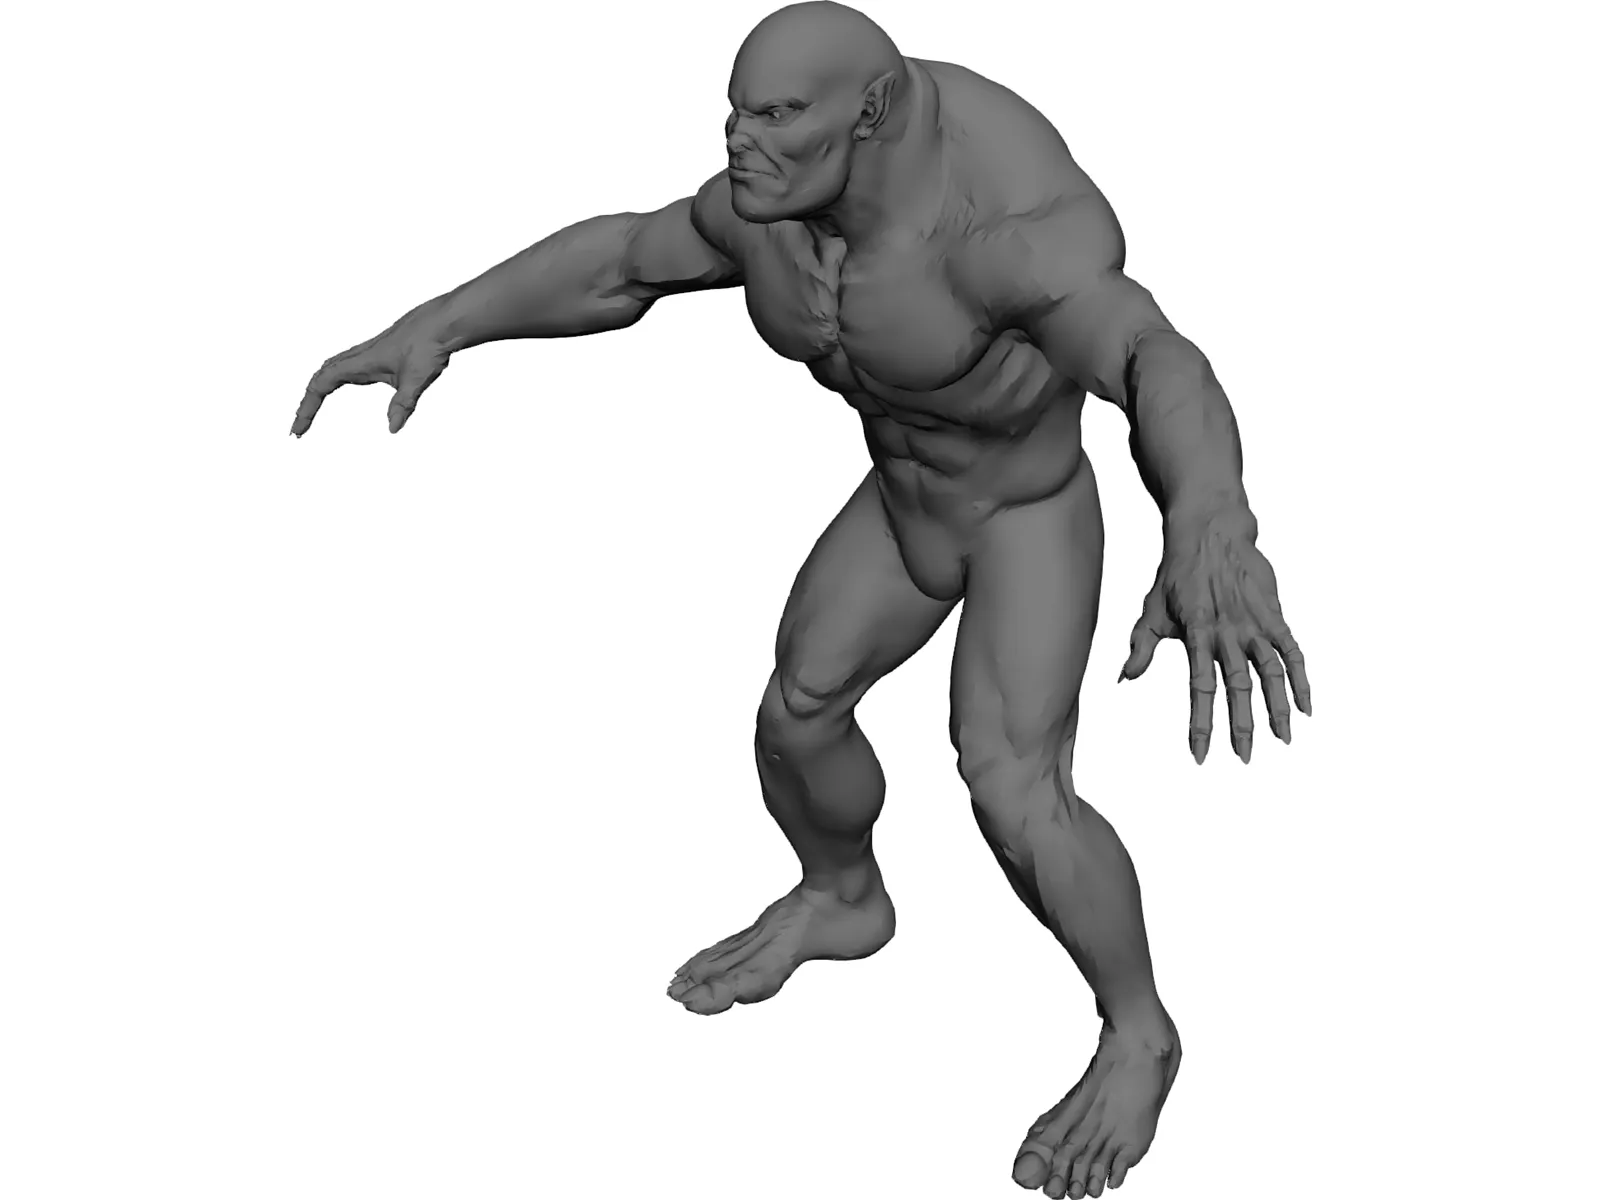 Monster 3D Model